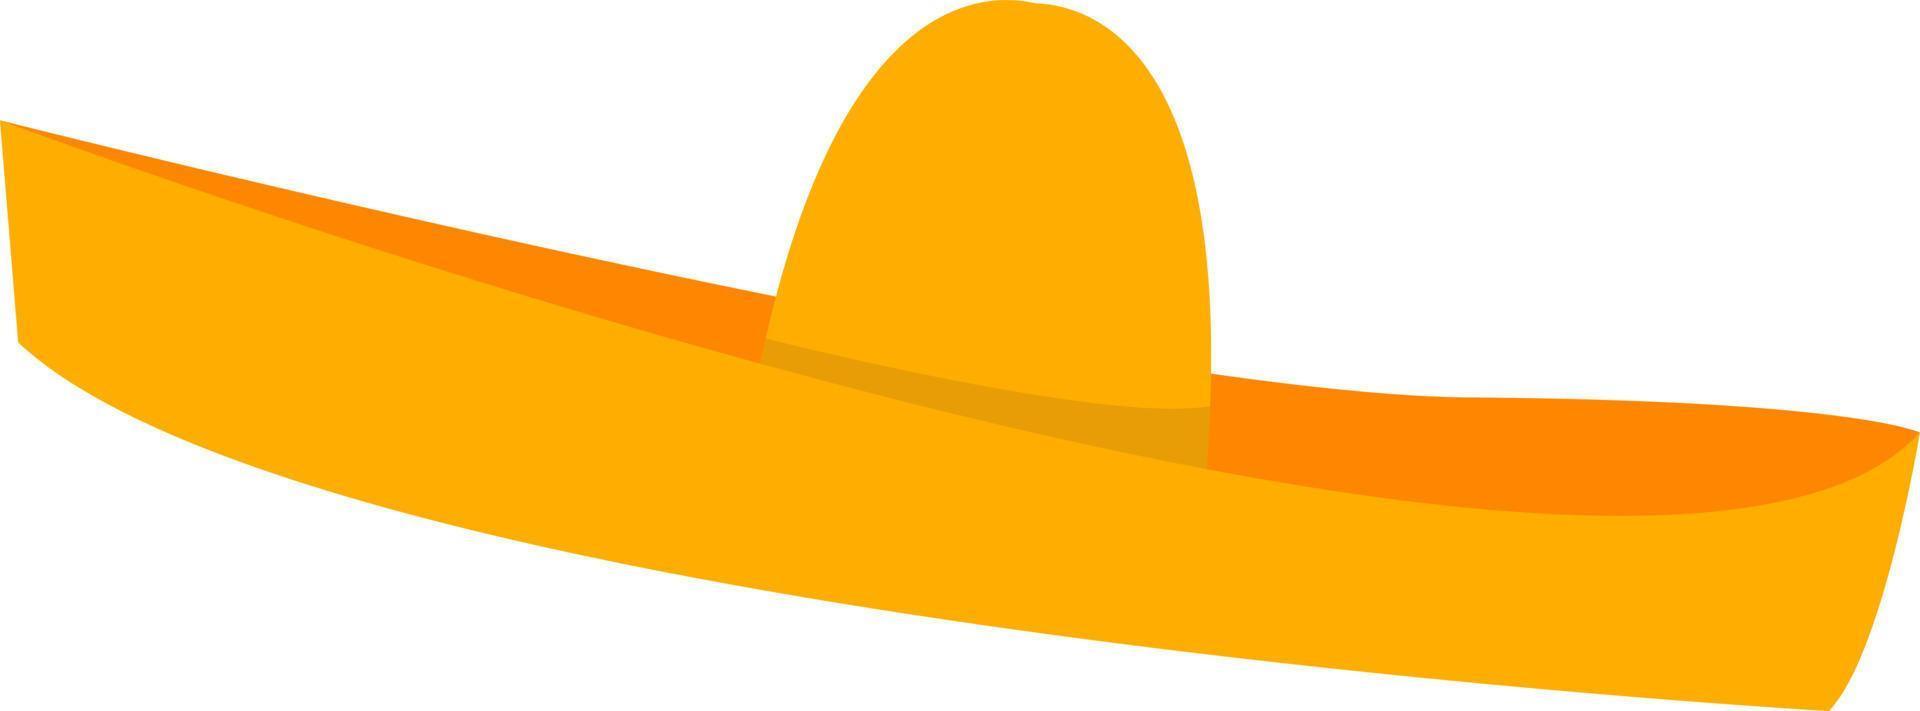 mexikansk hatt, illustration, vektor på vit bakgrund.